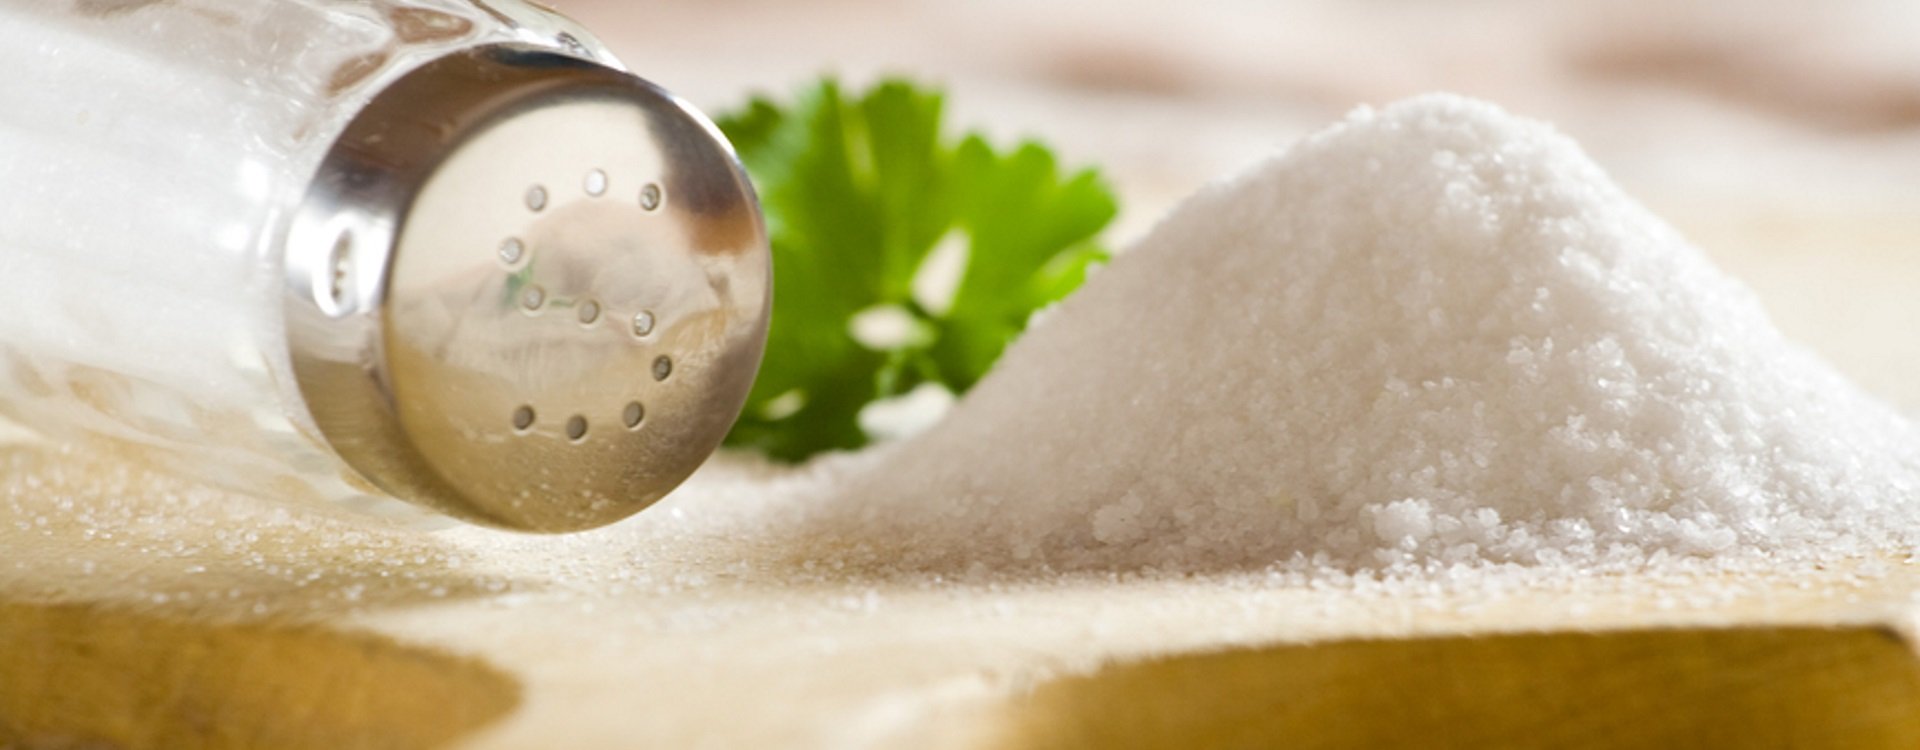 Salz im Wellness- und Kosmetikbereich